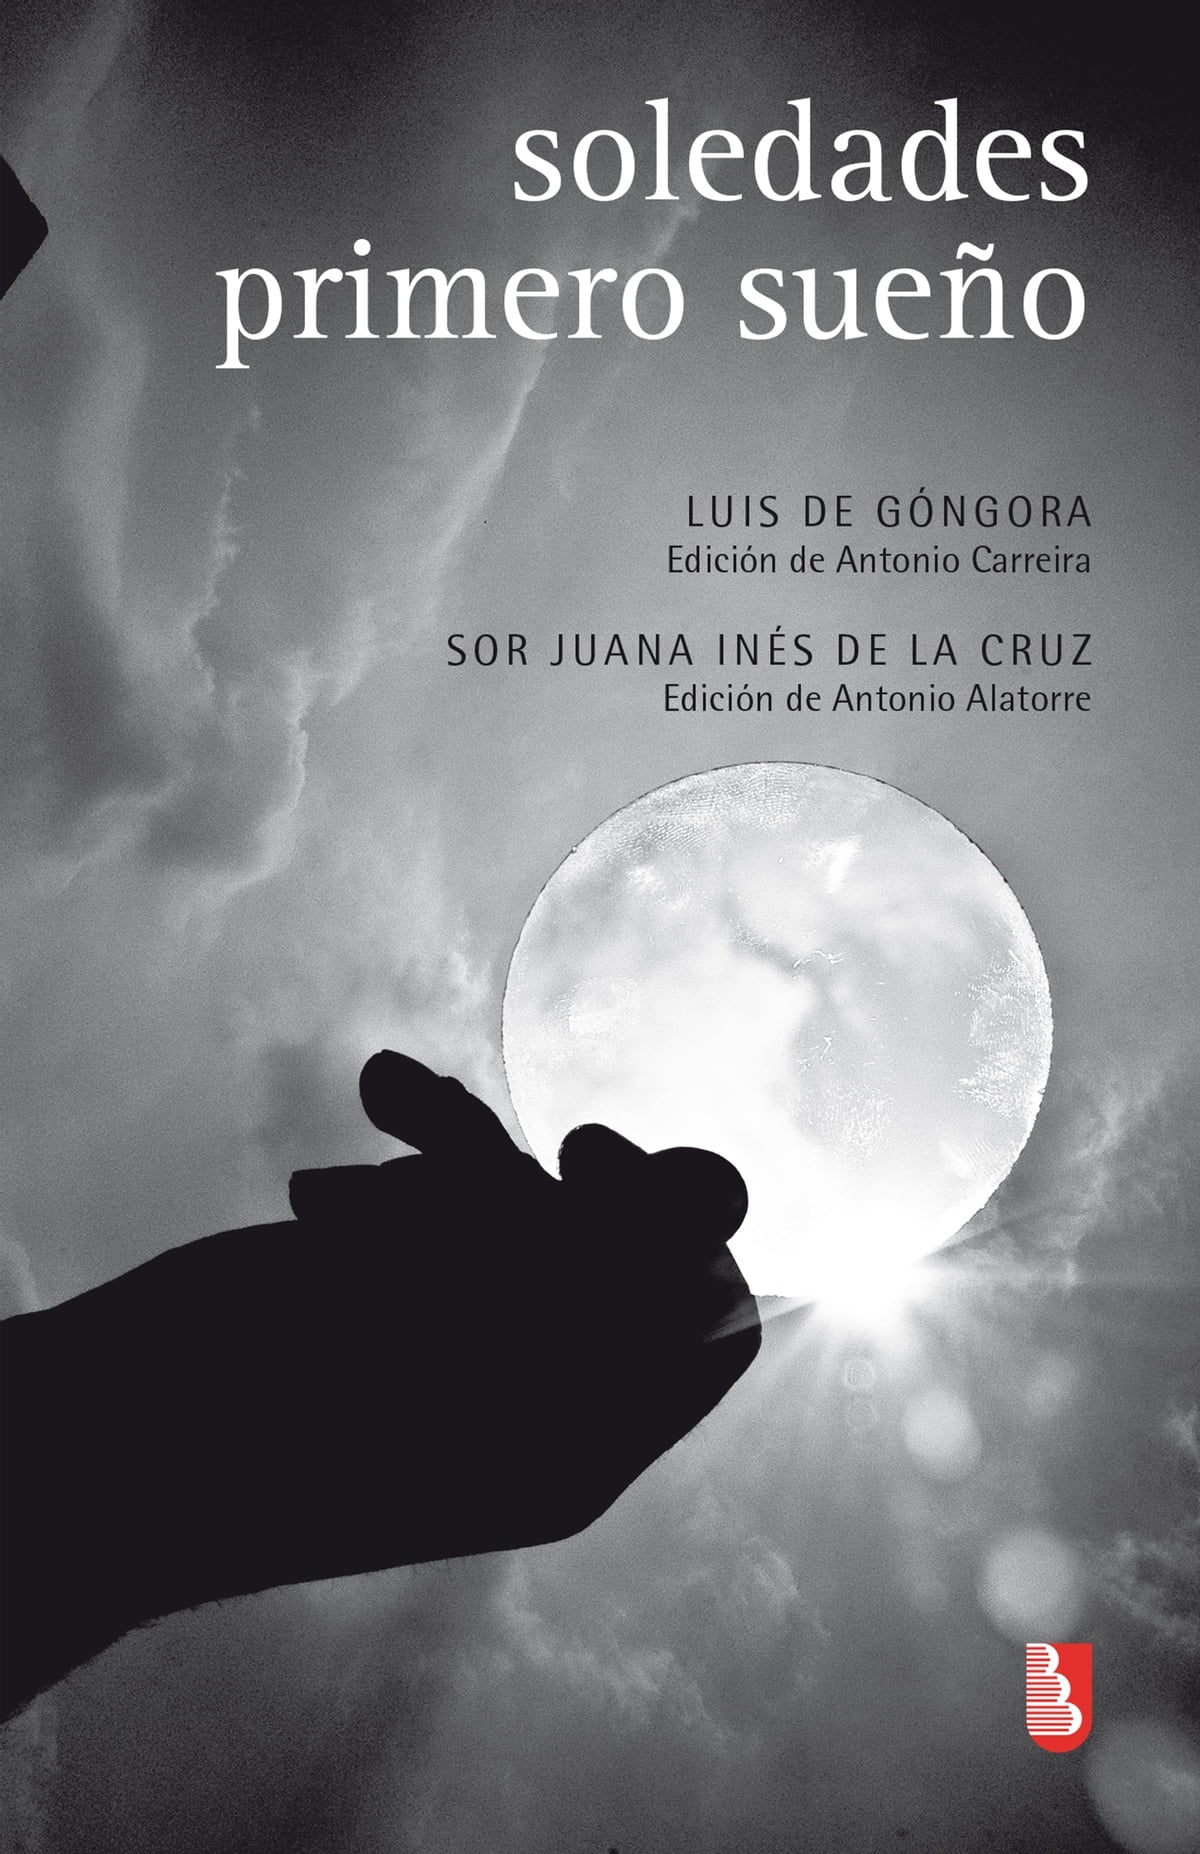 Soledades / Primero sueño - Luis de Góngora y Sor Juana Inés De La Cruz